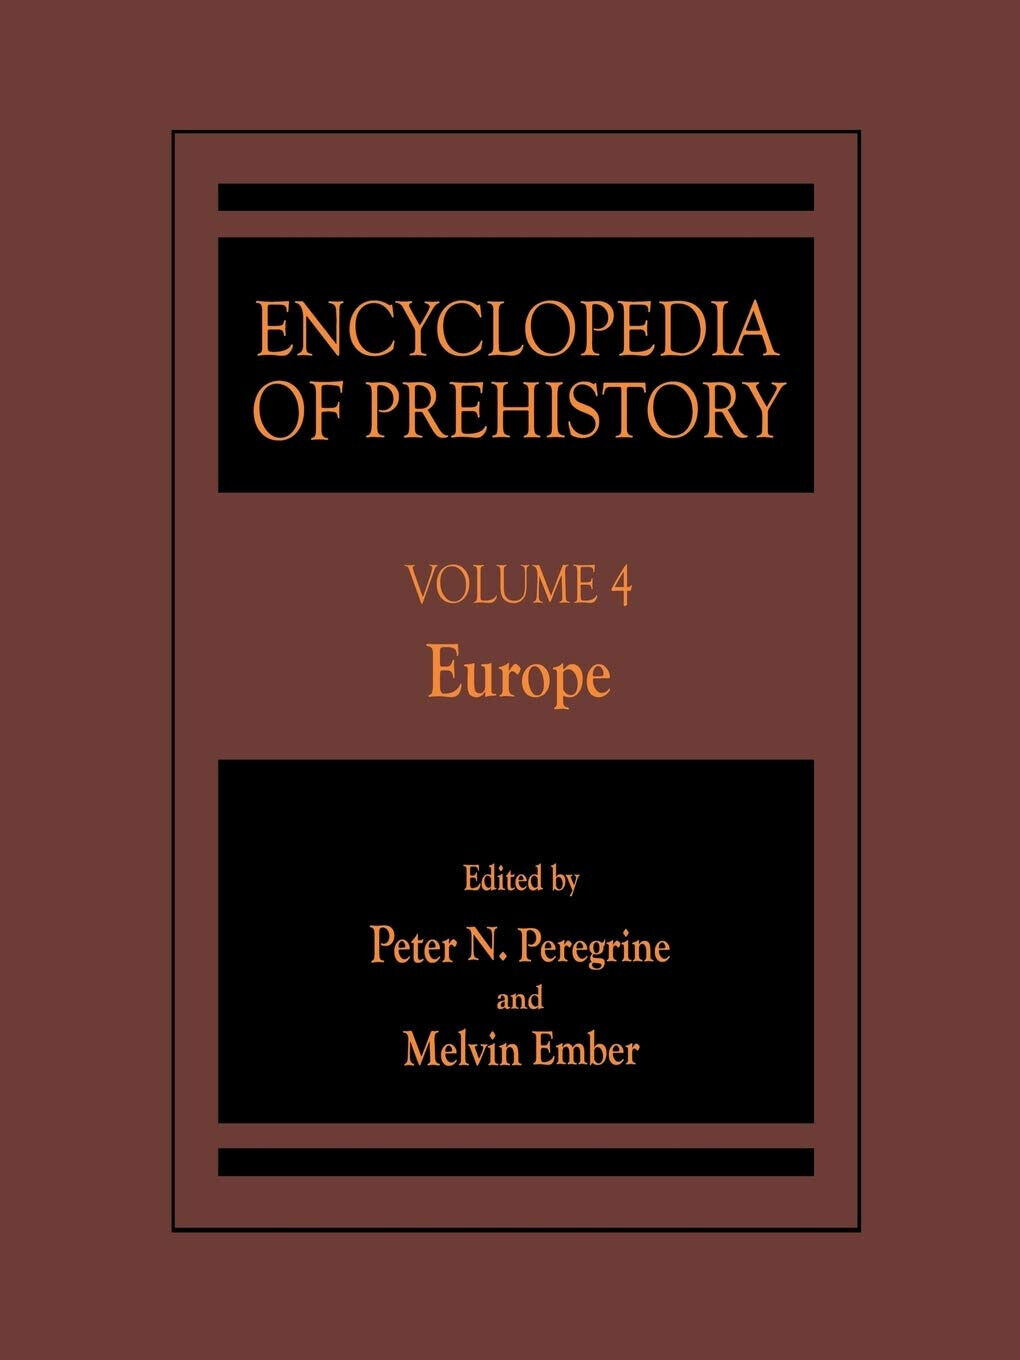 Encyclopedia of Prehistory: Europe: Volume 4 - Peter N. Peregrine - 2001